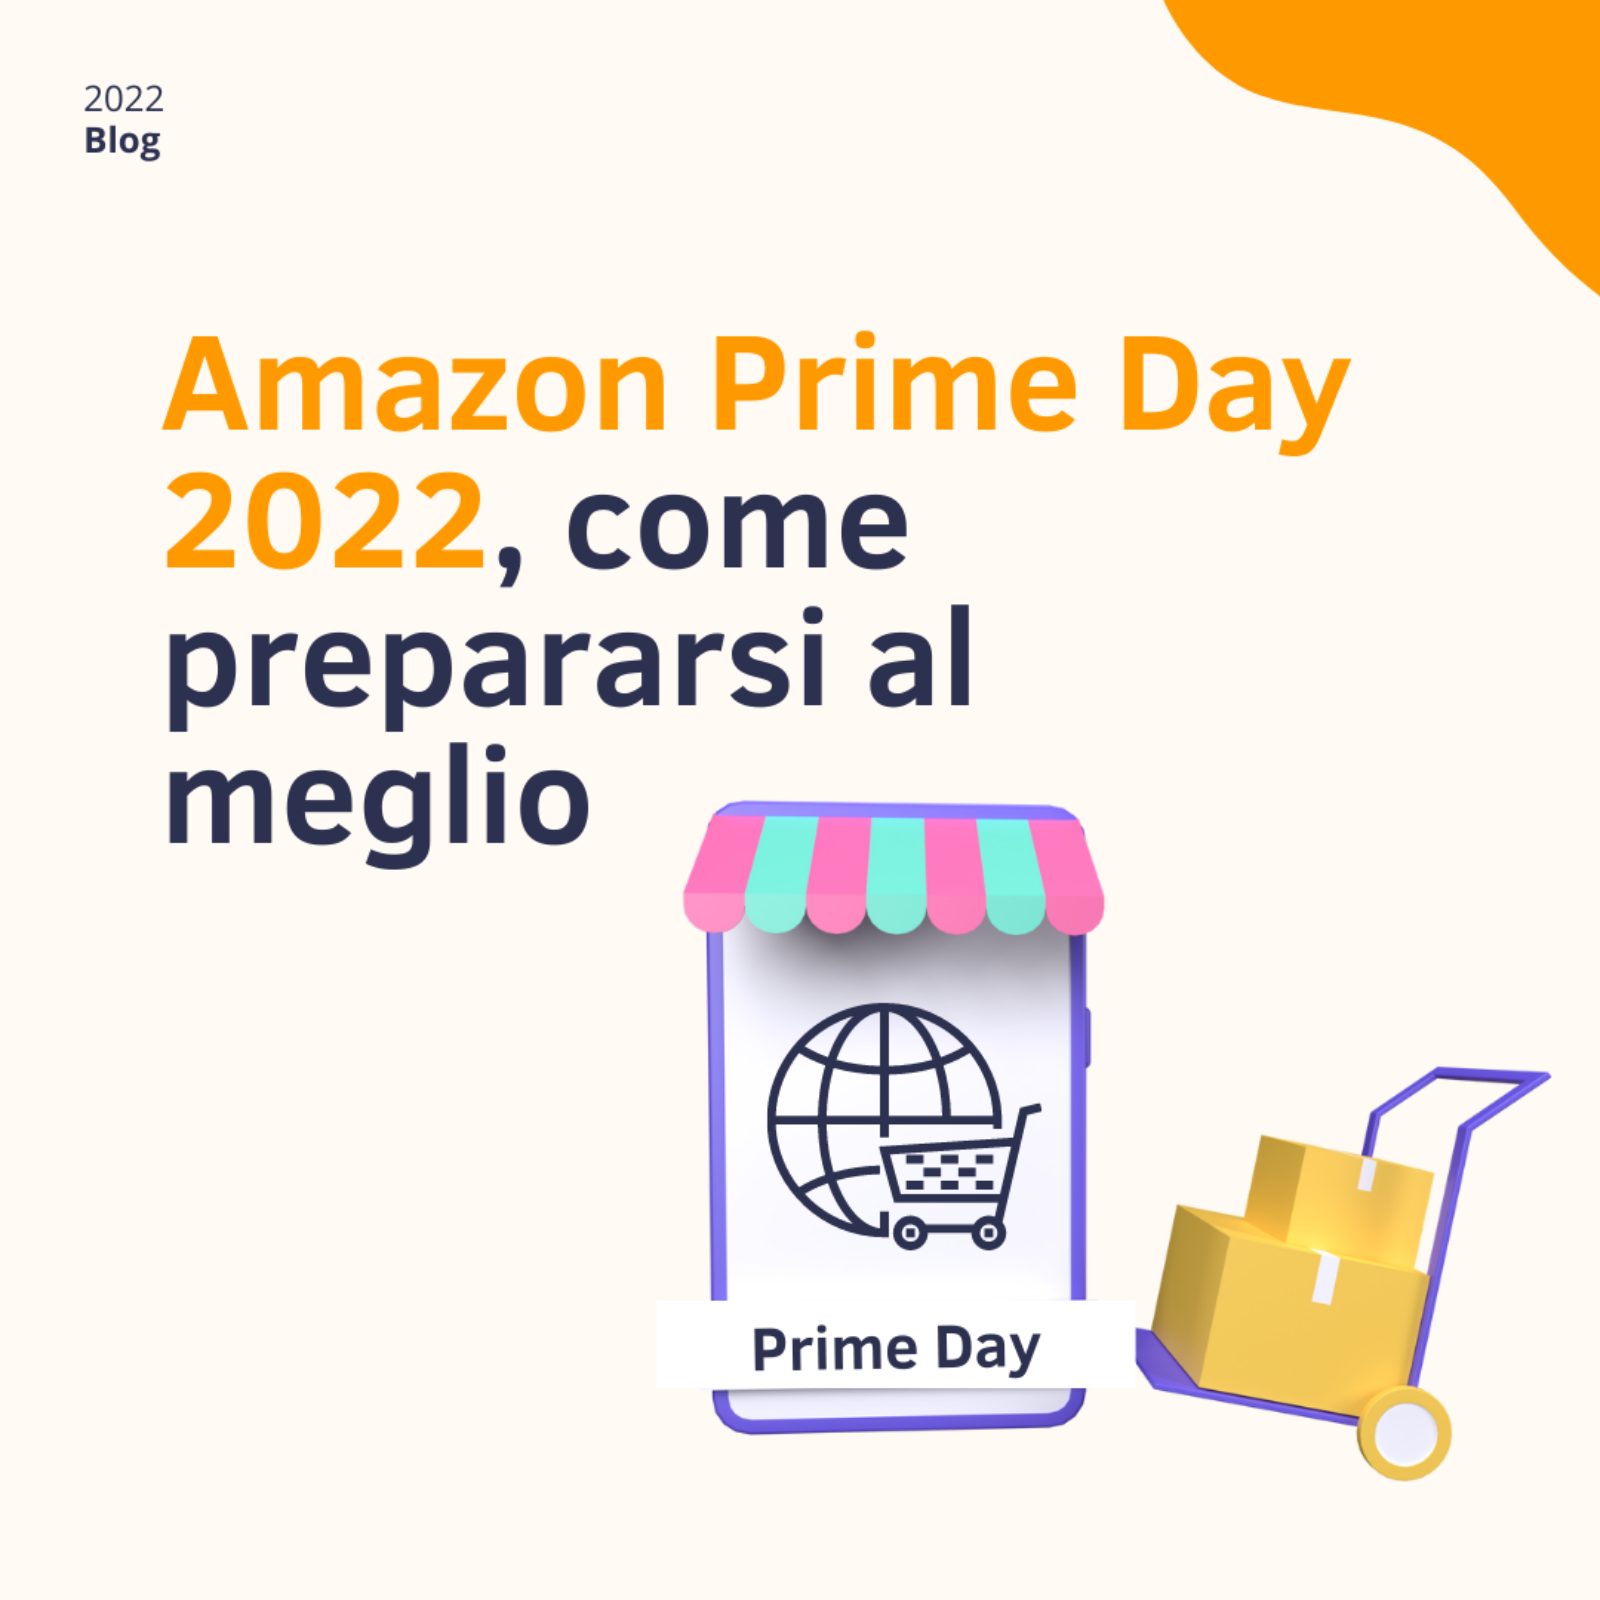 Etailing | Come prepararsi al meglio all'Amazon Prime Day